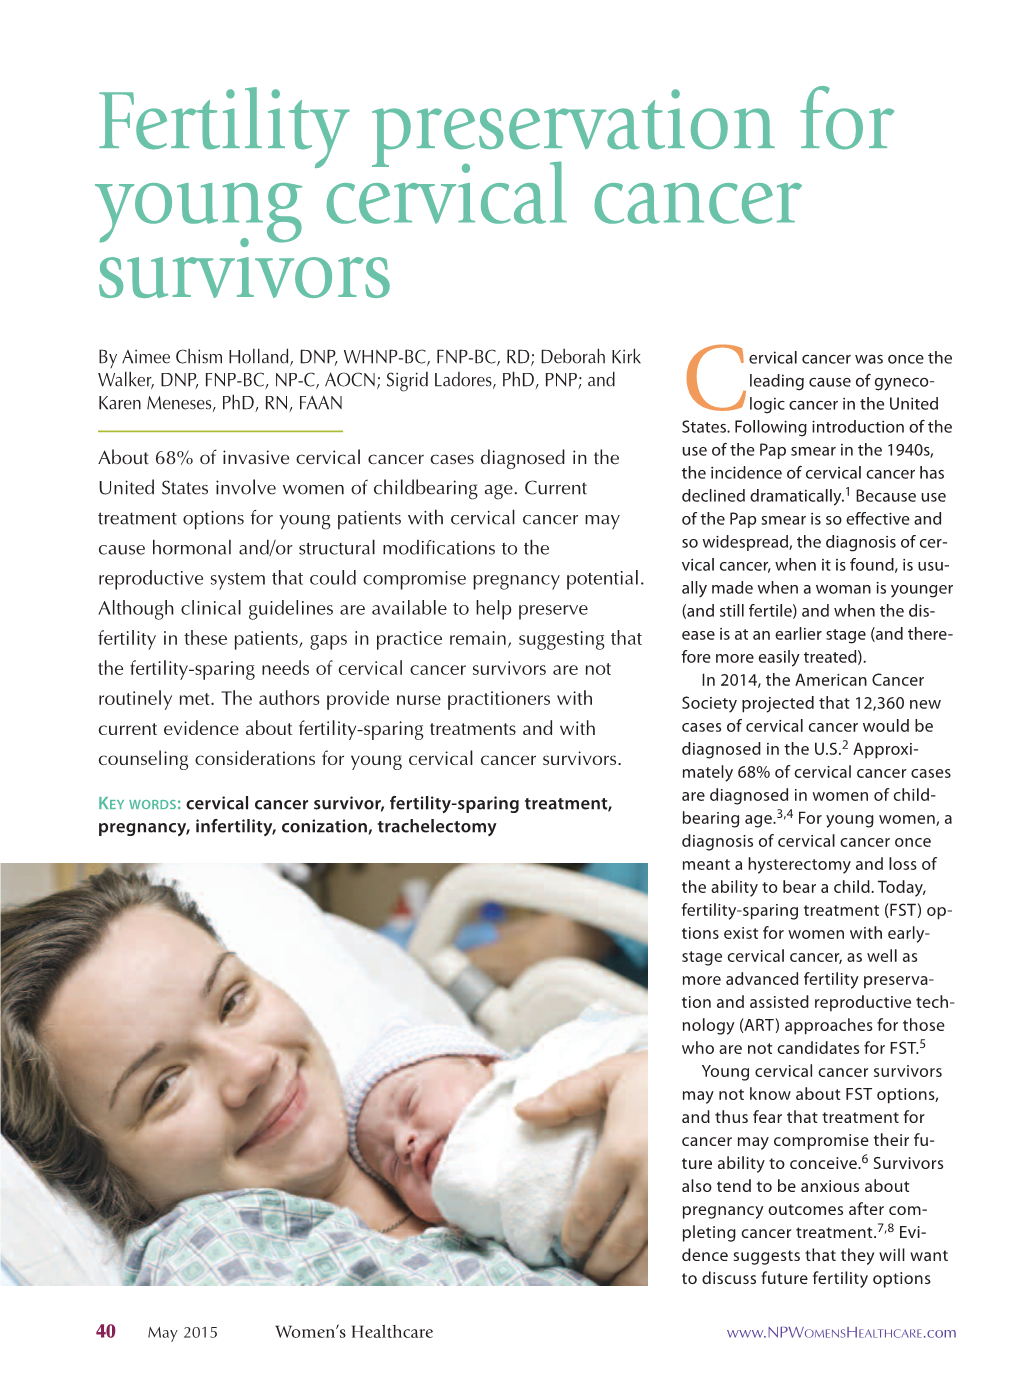 Fertility Preservation for Young Cervical Cancer Survivors